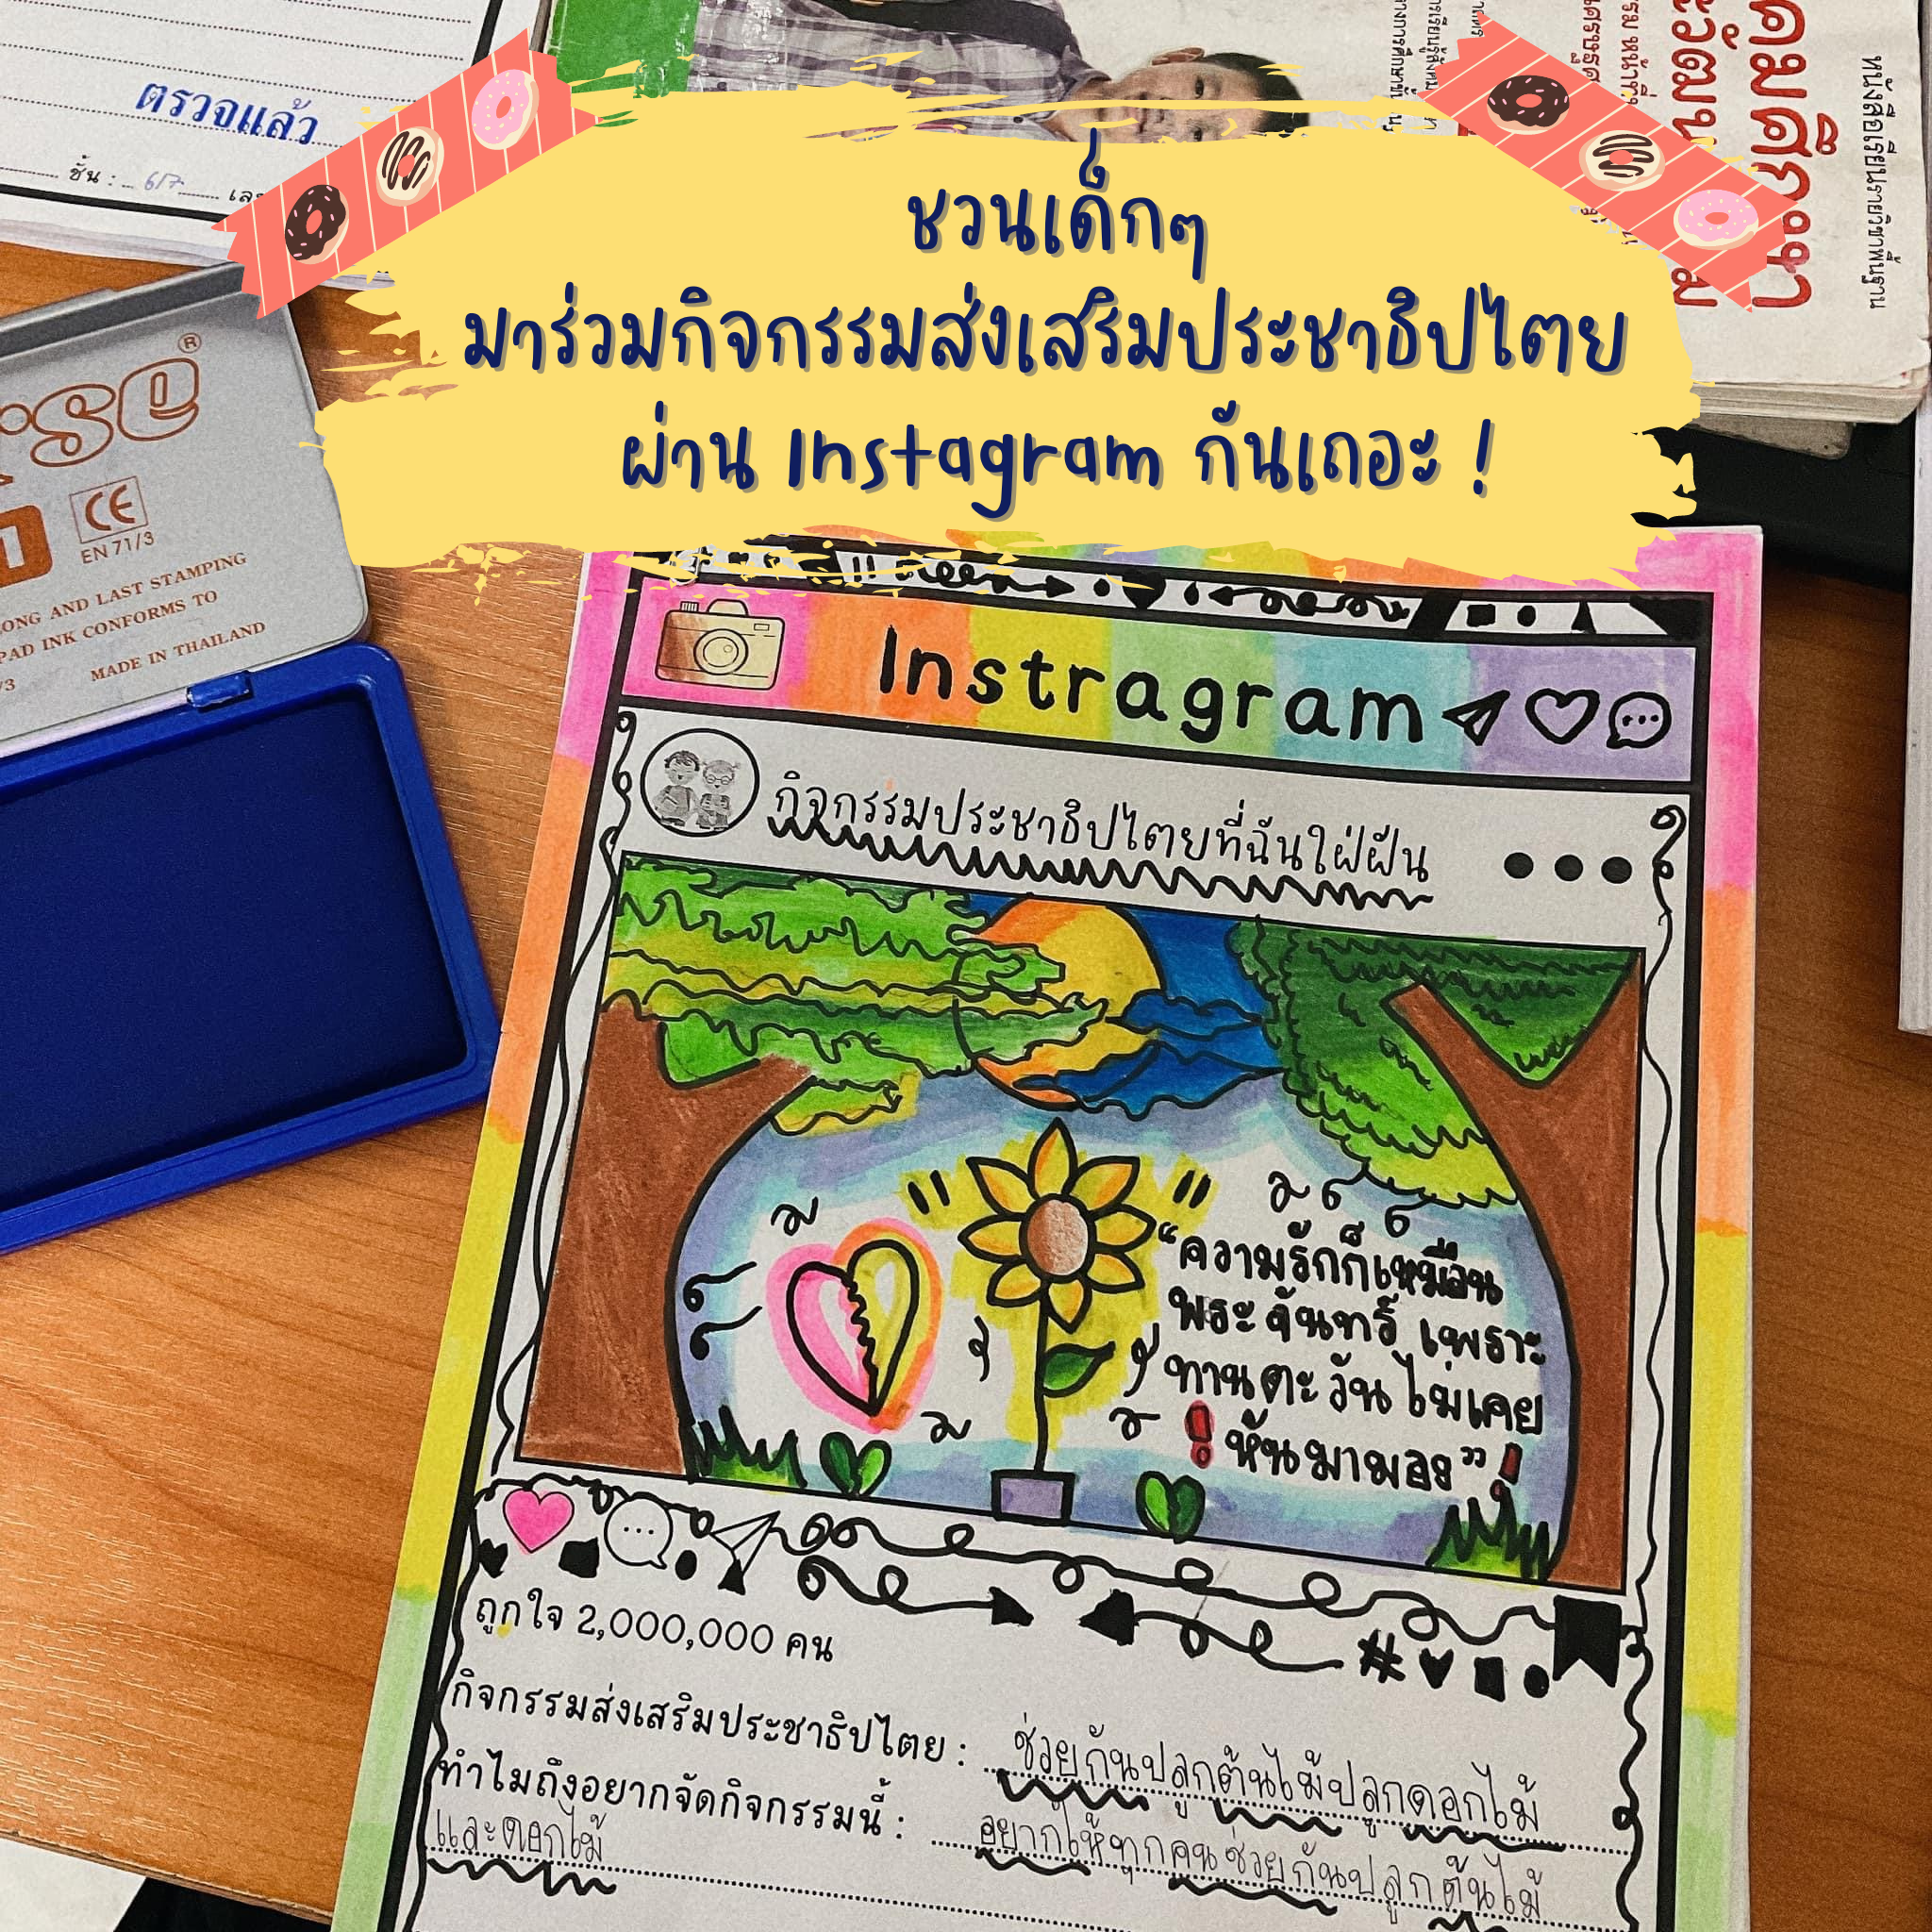 ภาพประกอบไอเดีย ชวนเด็กๆมาร่วมกิจกรรมประชาธิปไตย ผ่าน instagram